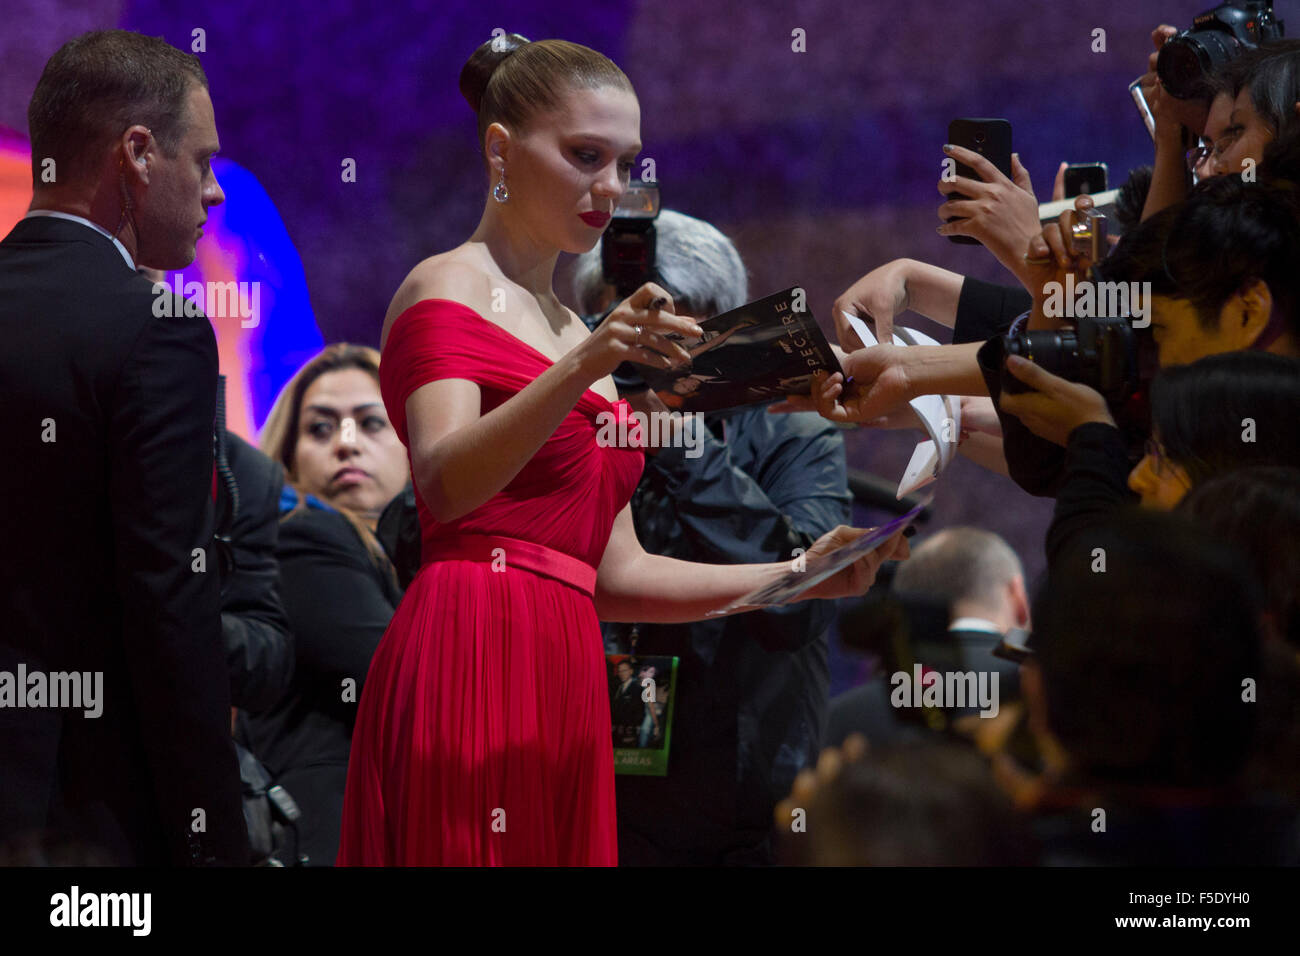 Mexico City, Mexico. 2nd Nov, 2015. Actress Lea Seydoux poses